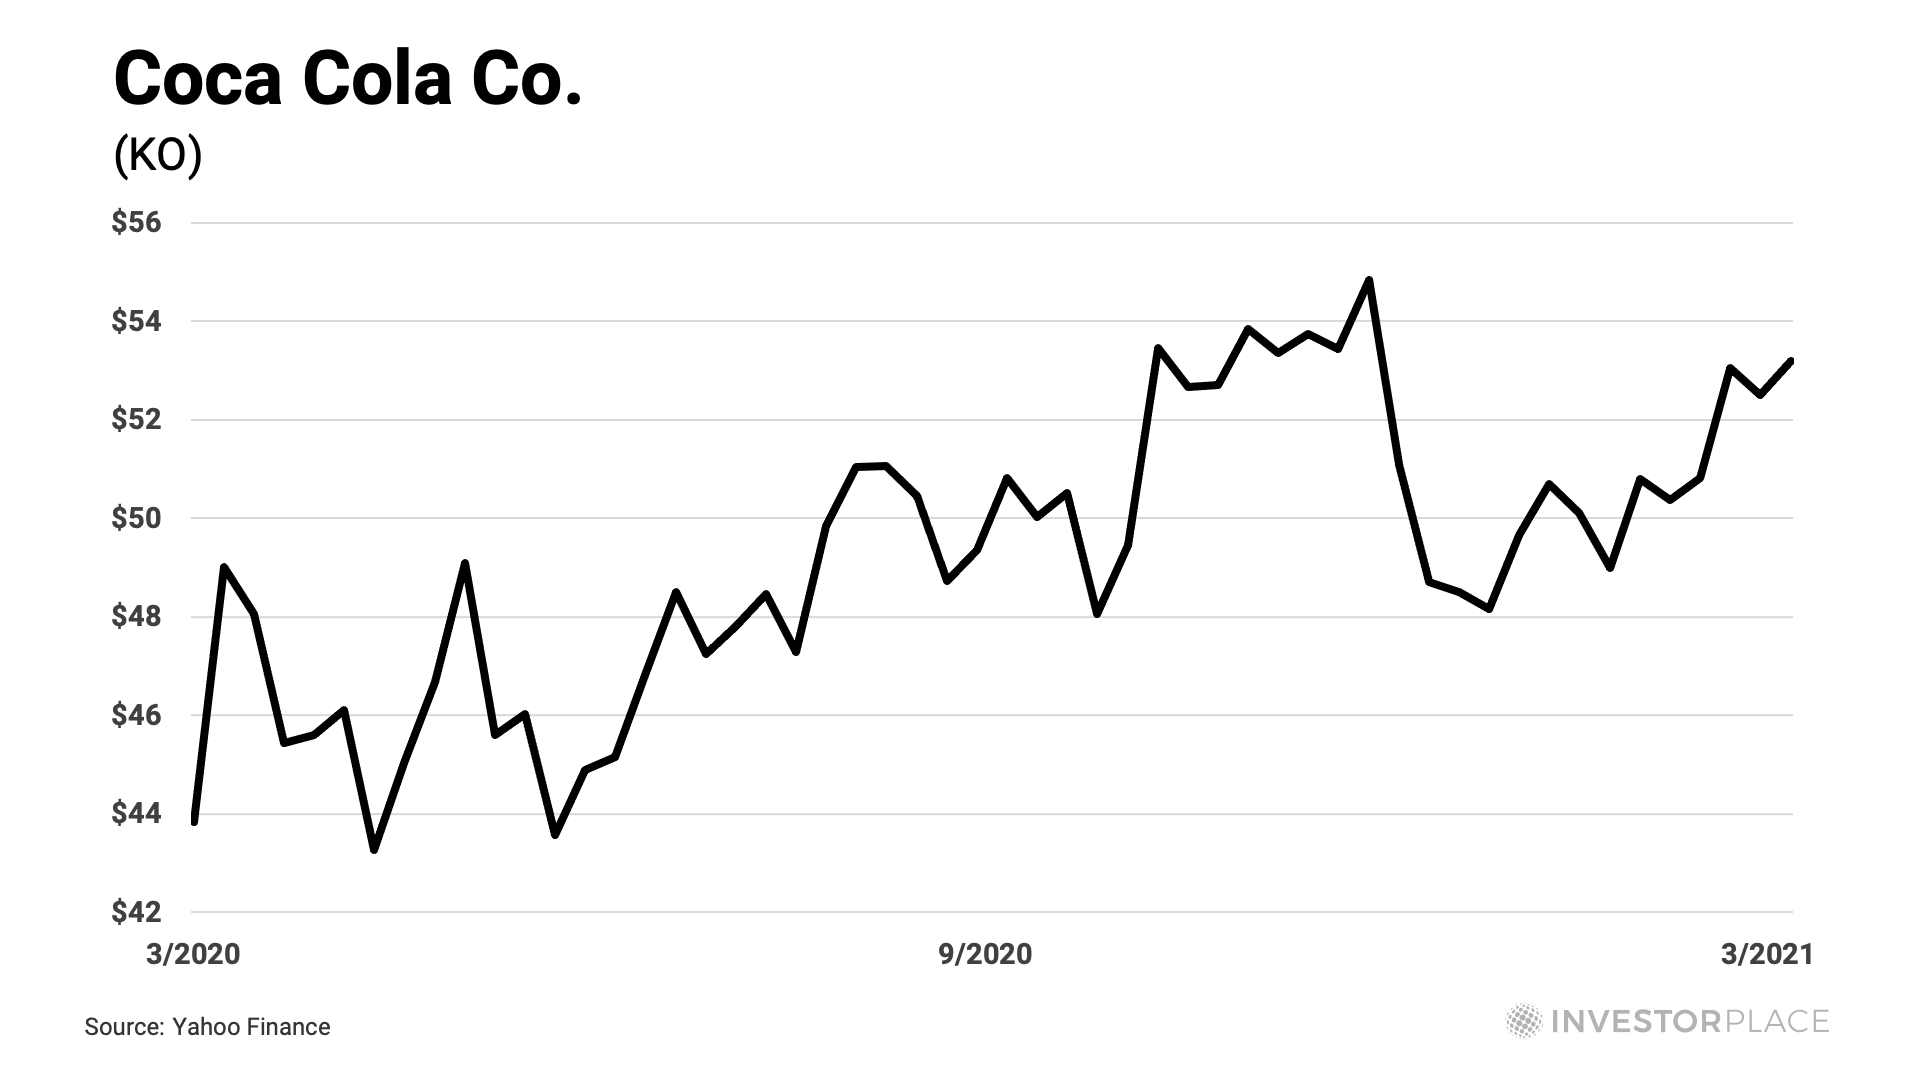 One year chart of KO stock